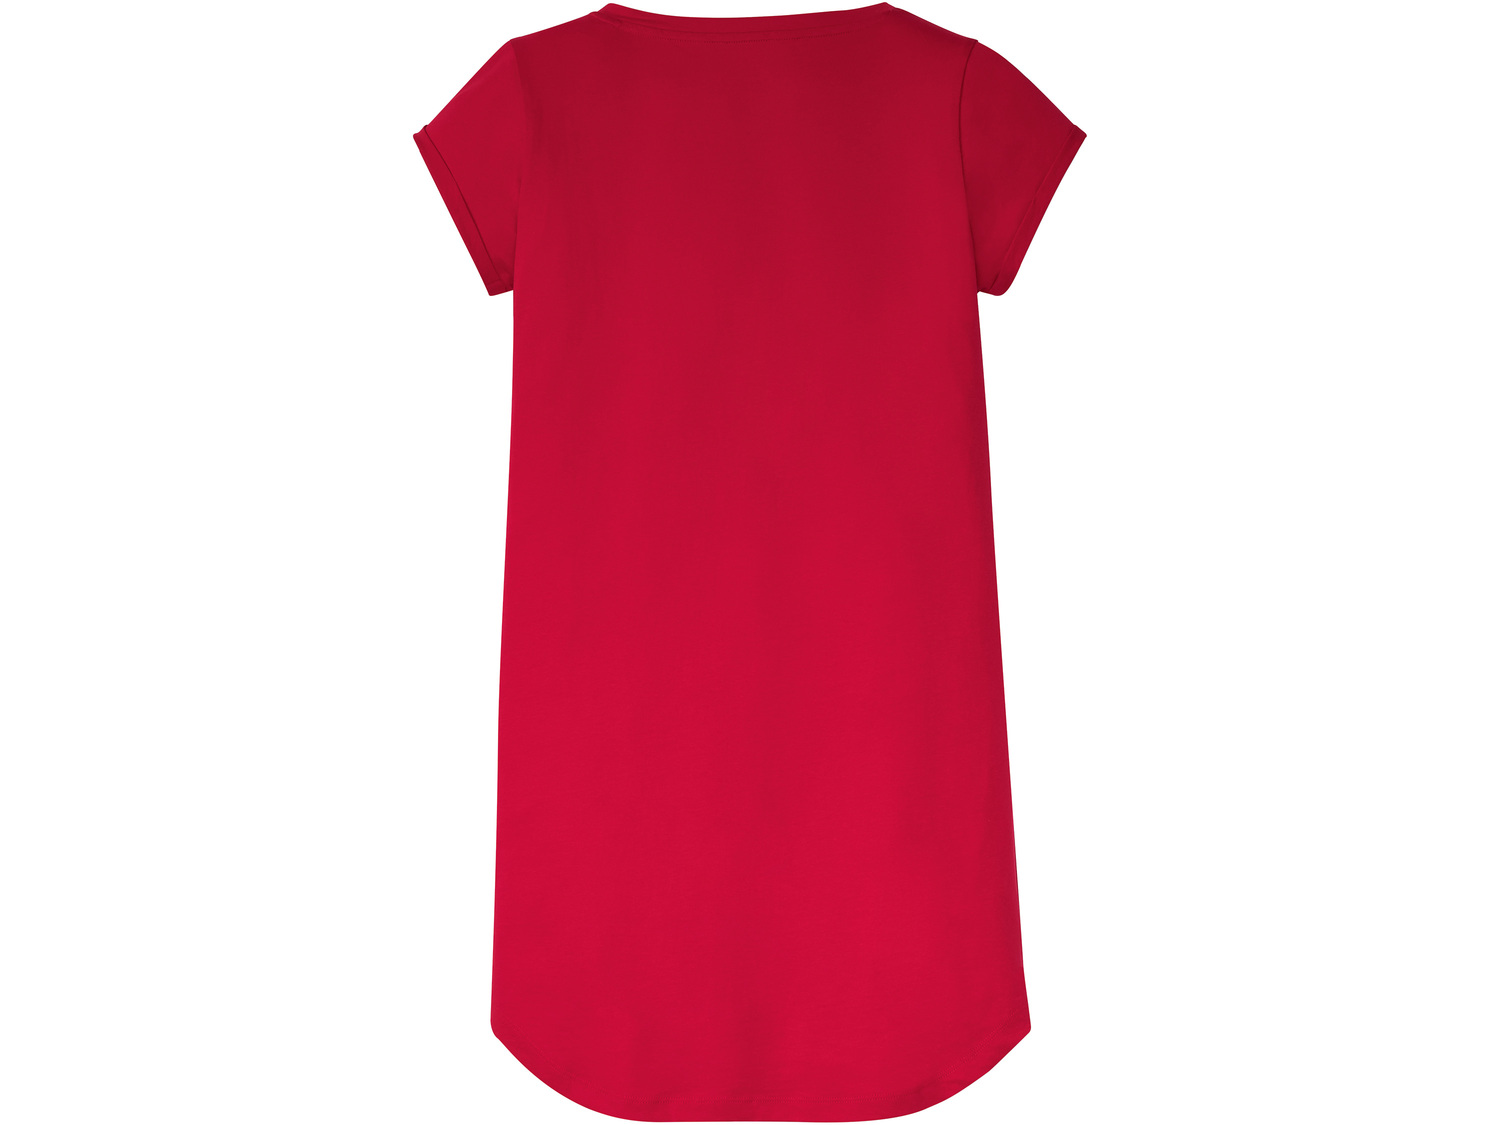 Koszula nocna damska Esmara Lingerie, cena 21,99 PLN 
- rozmiary: S-L
- 100% bawełny
Dostępne ...